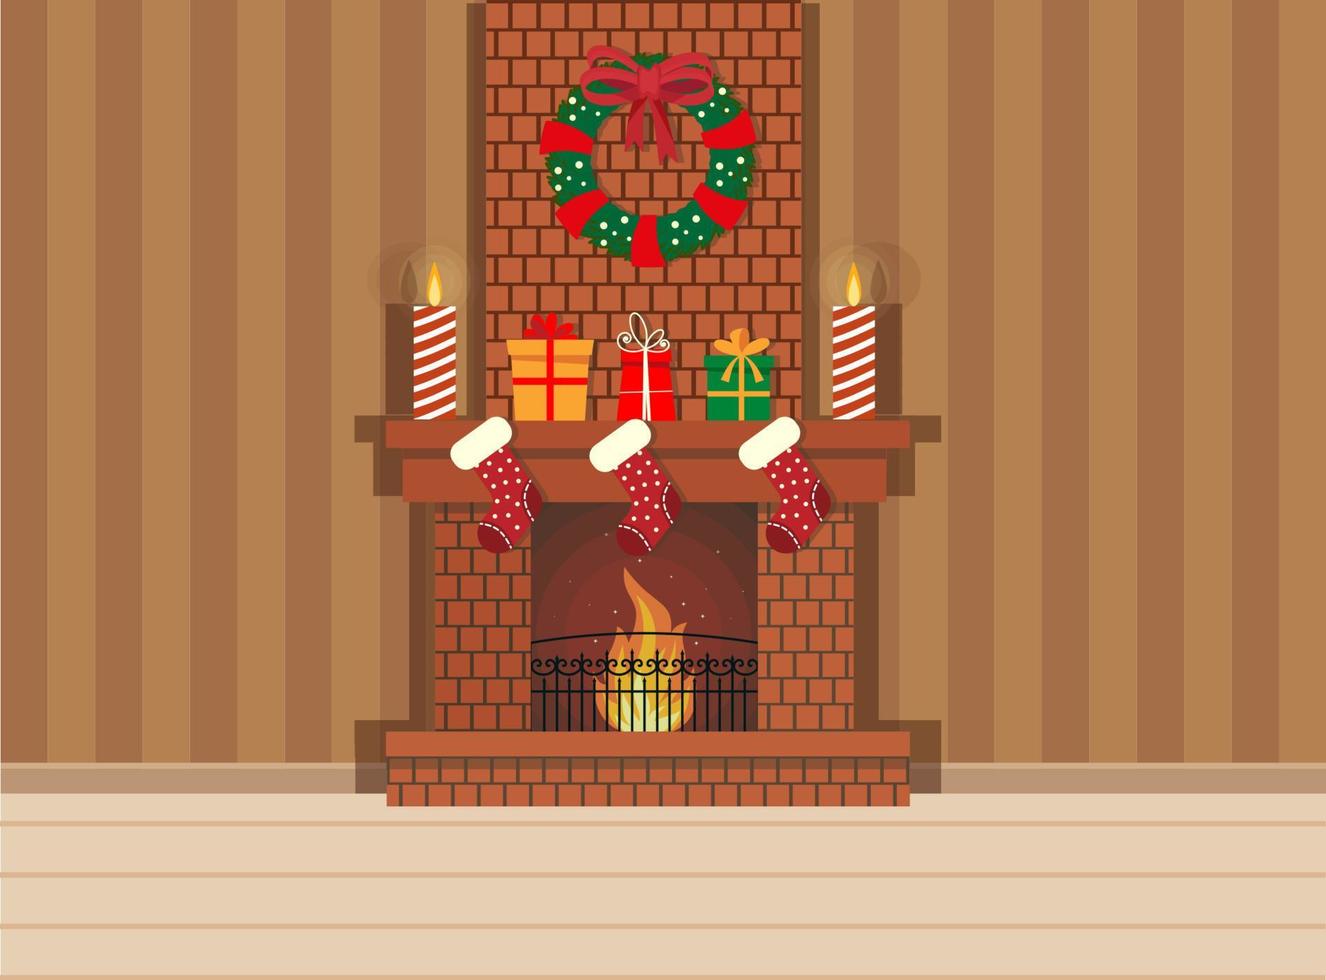 mysigt levande interiör jul med röd soffa, gåvor, och träd. vektor platt stil illustration.